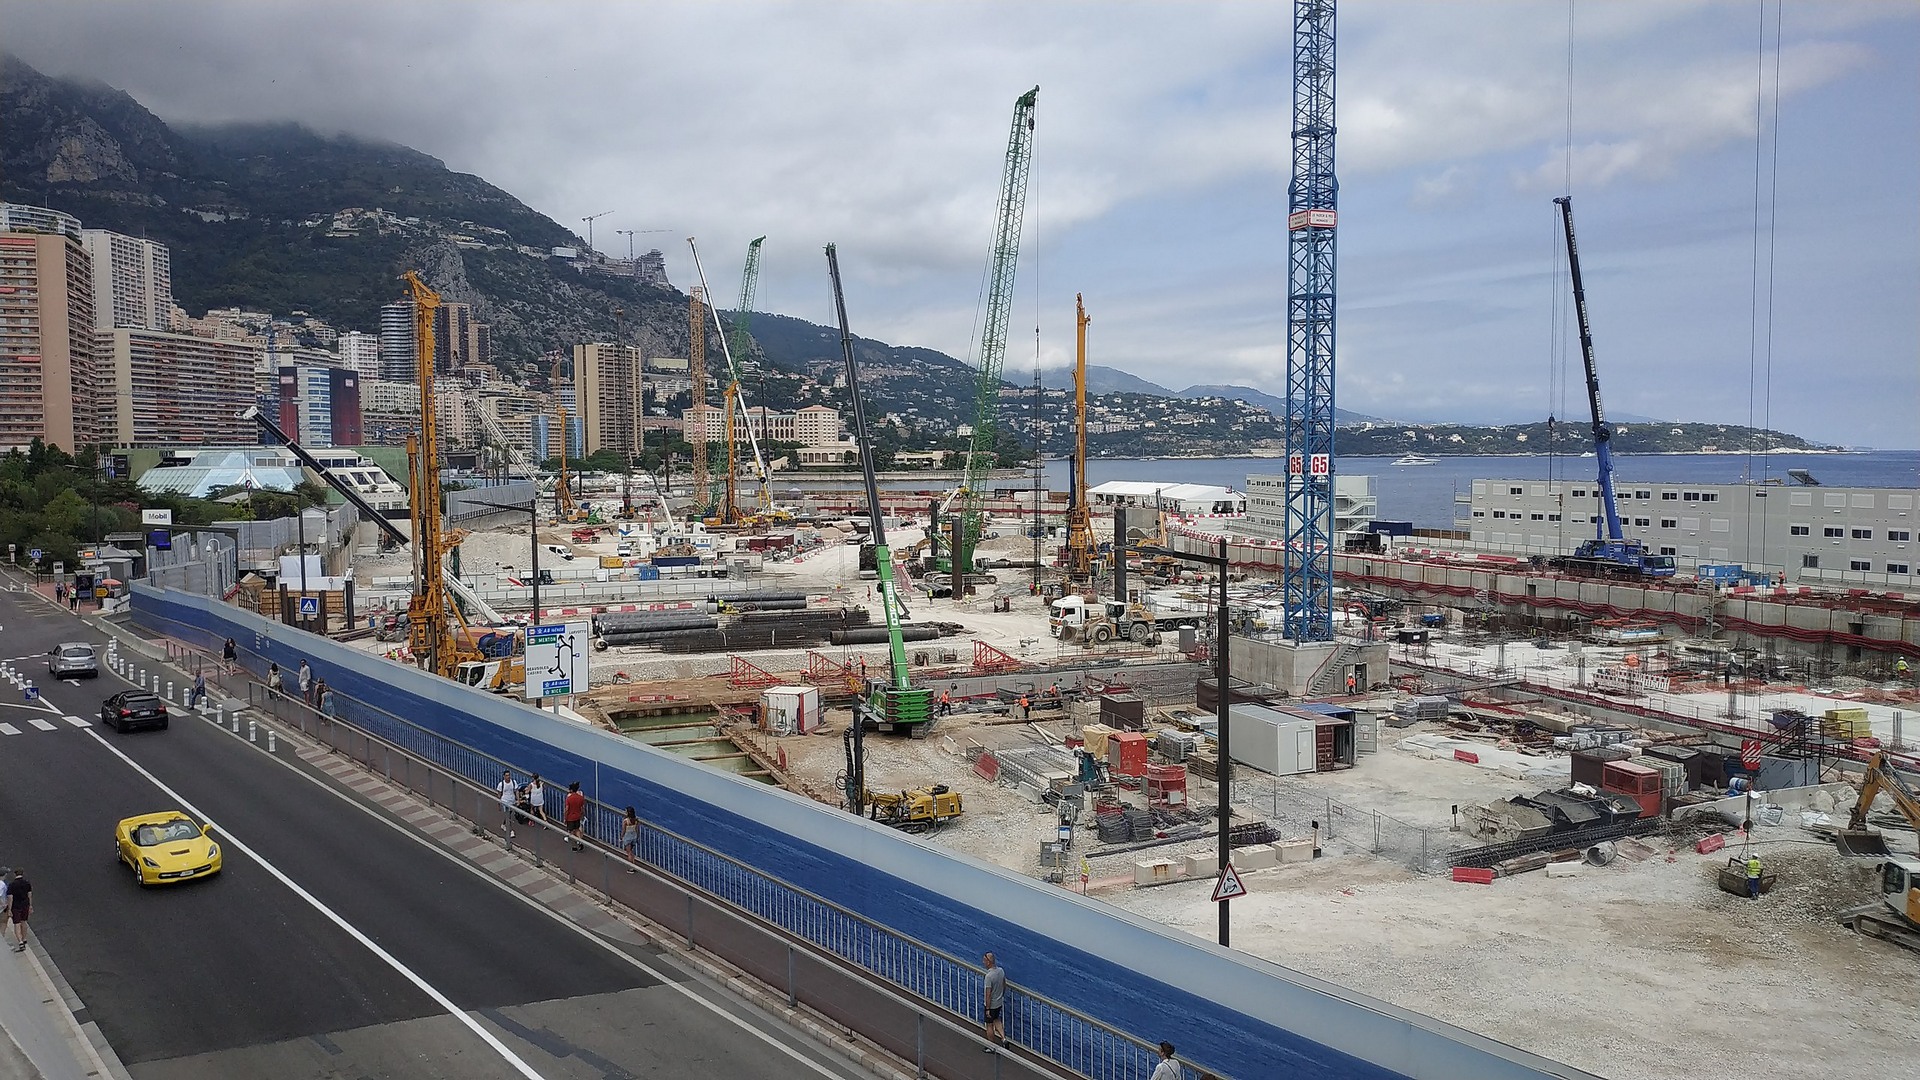 Monaco is extending into the sea